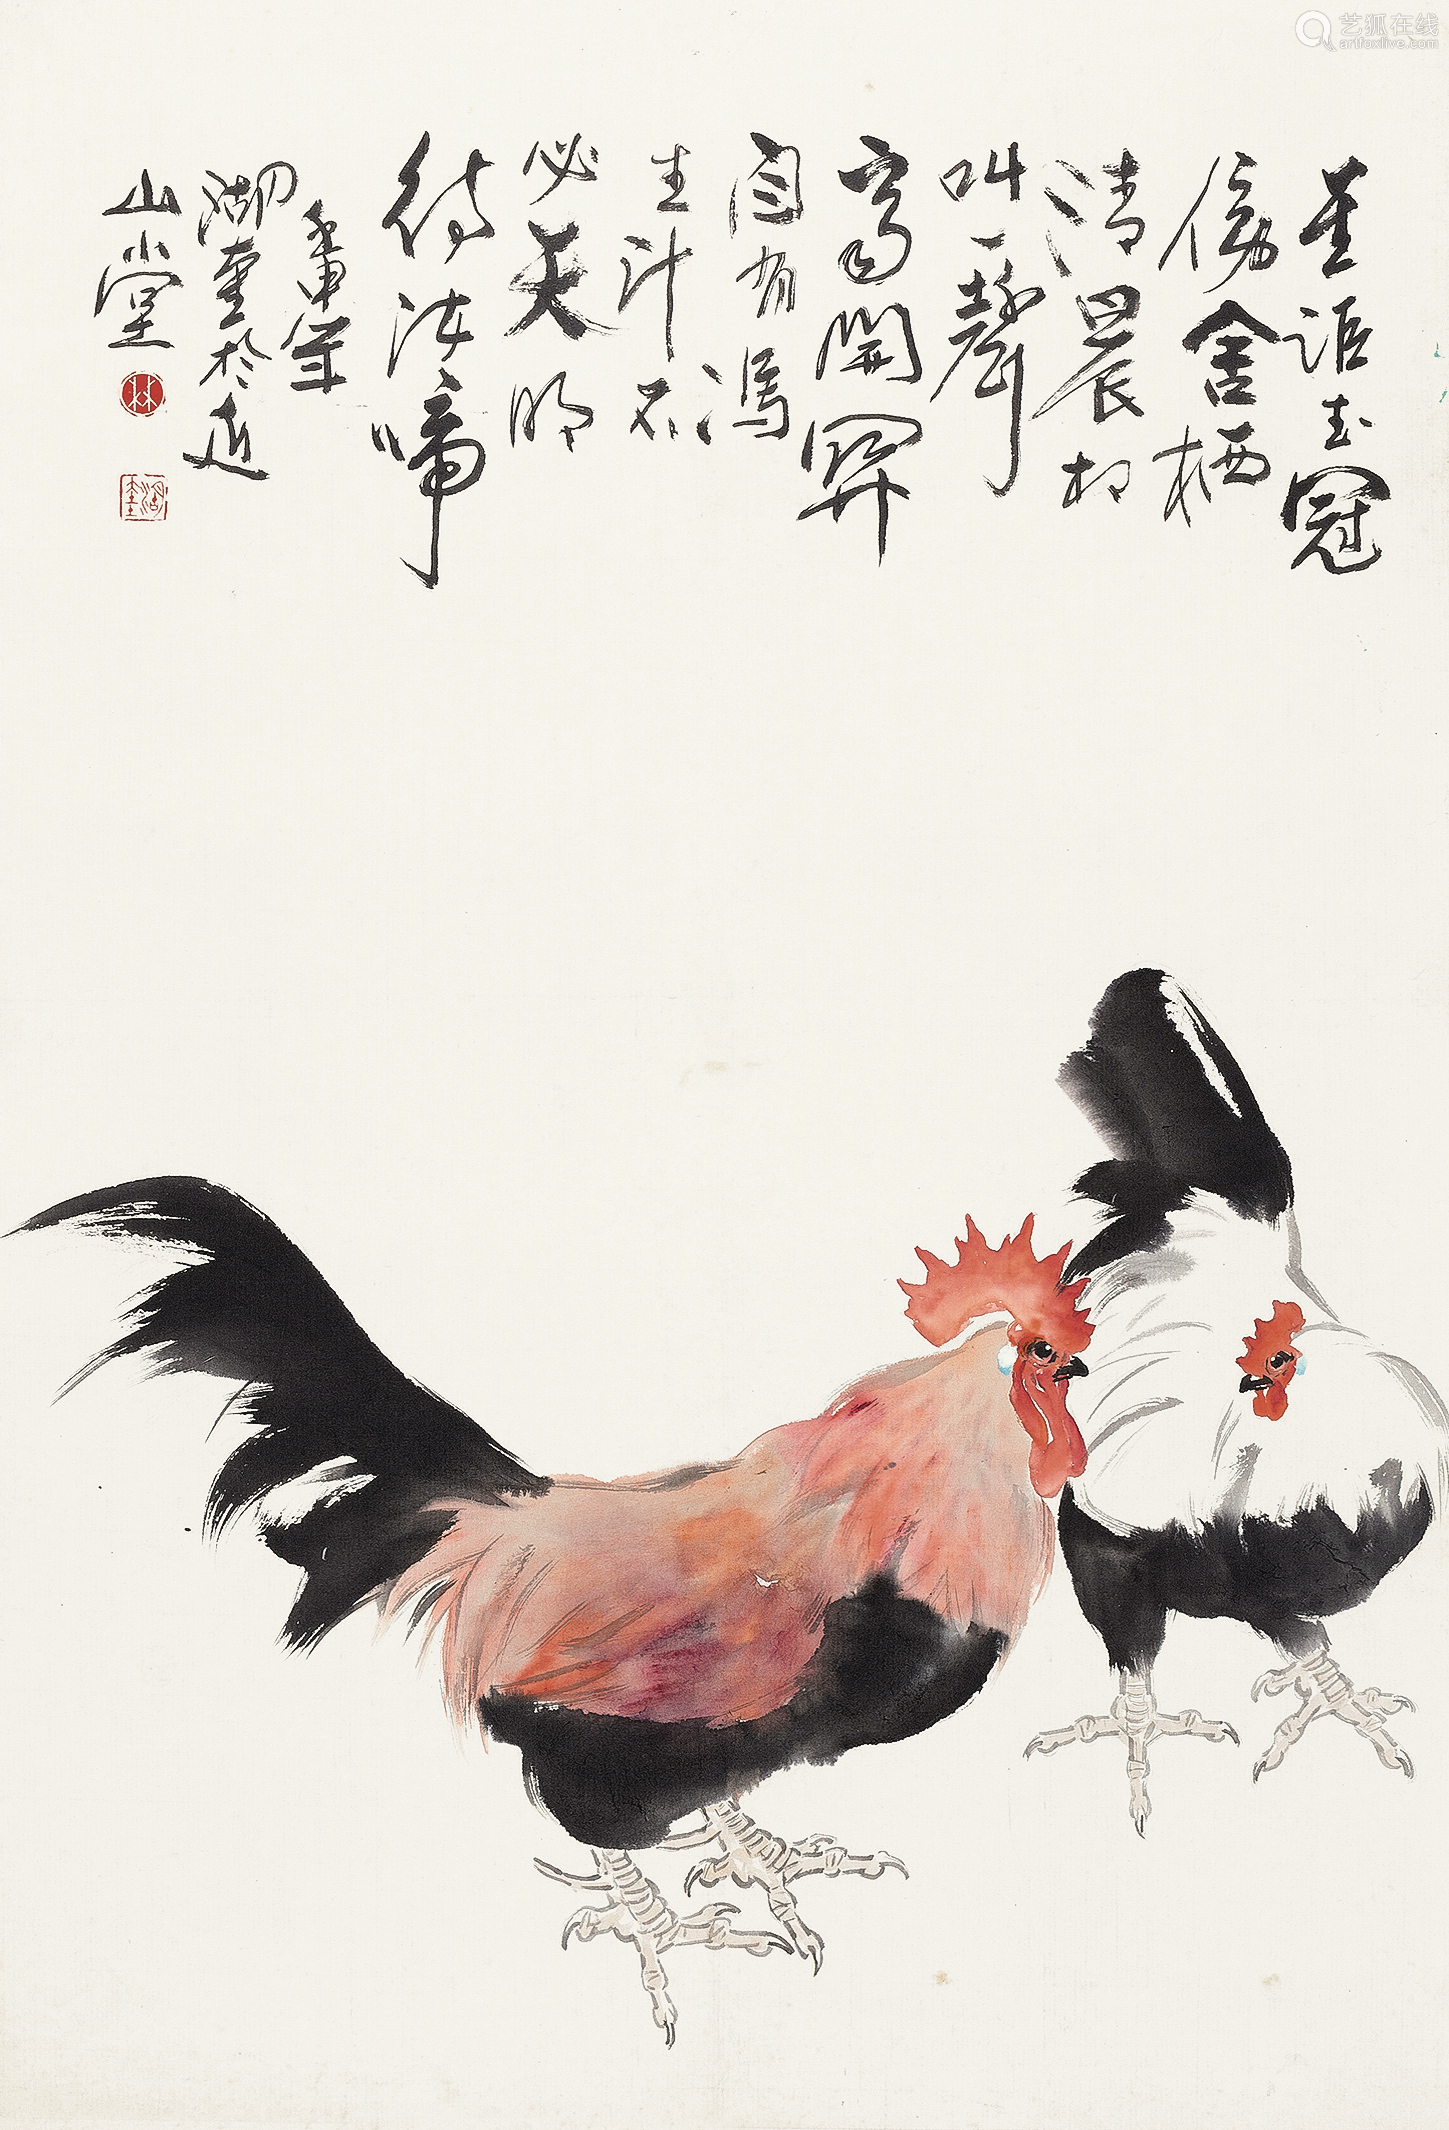 公鸡国画 - 雄鸡图 - 99字画网